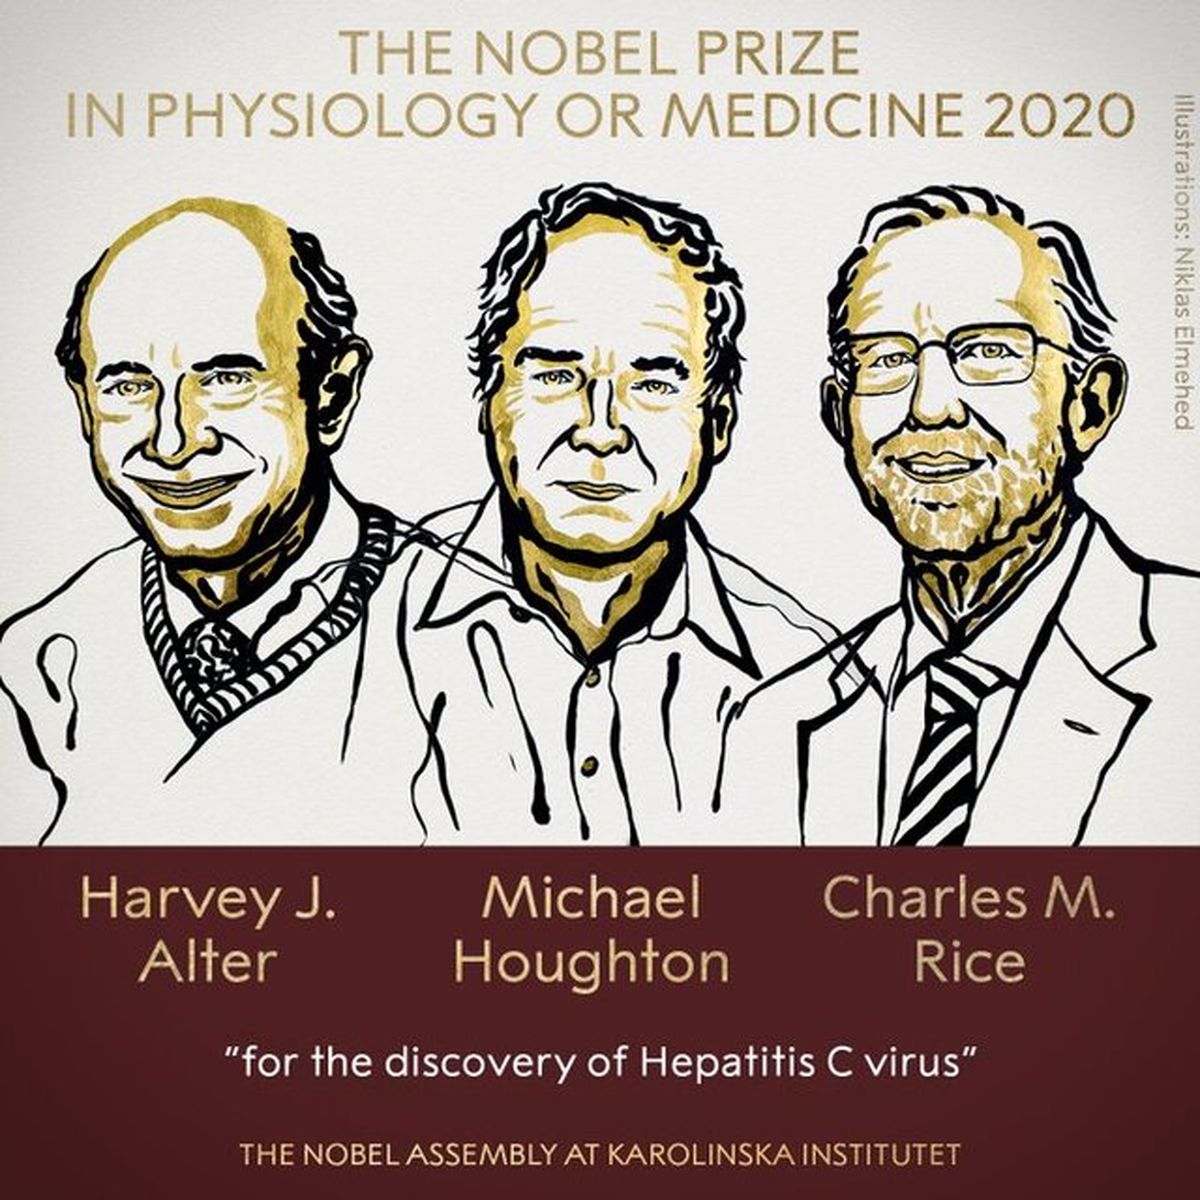 دستاورد برندگان نوبل پزشکی ۲۰۲۰ دقیقاً چه بوده است؟